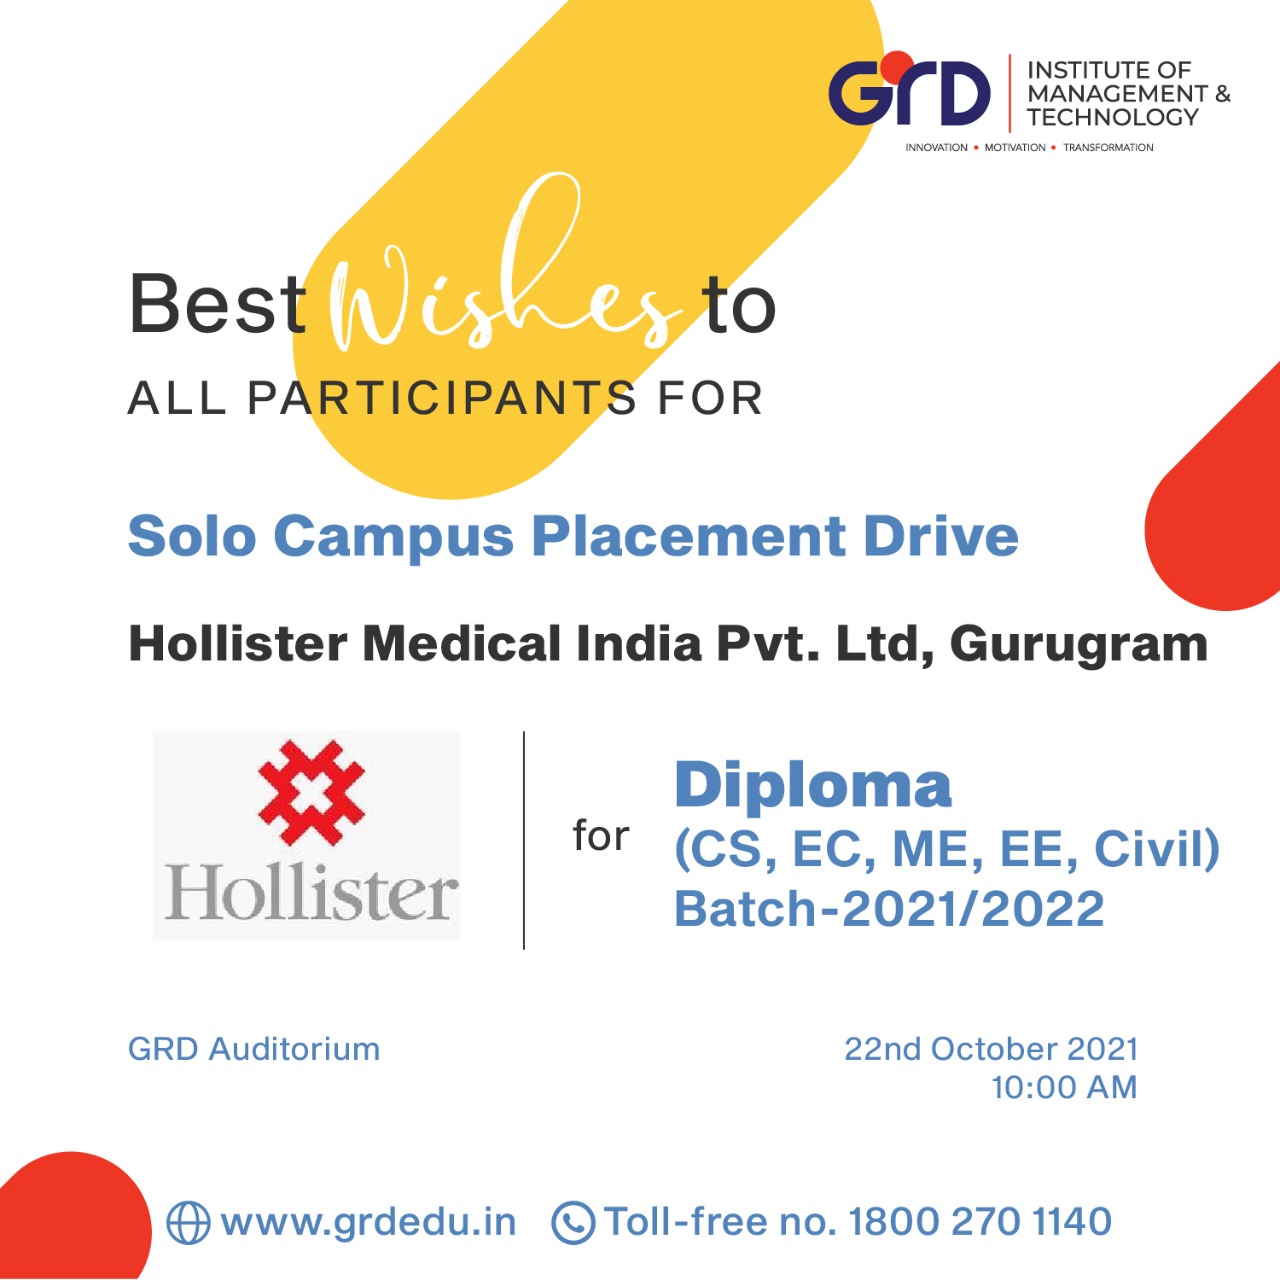 Hollister Medical India Pvt. Ltd. Bawal